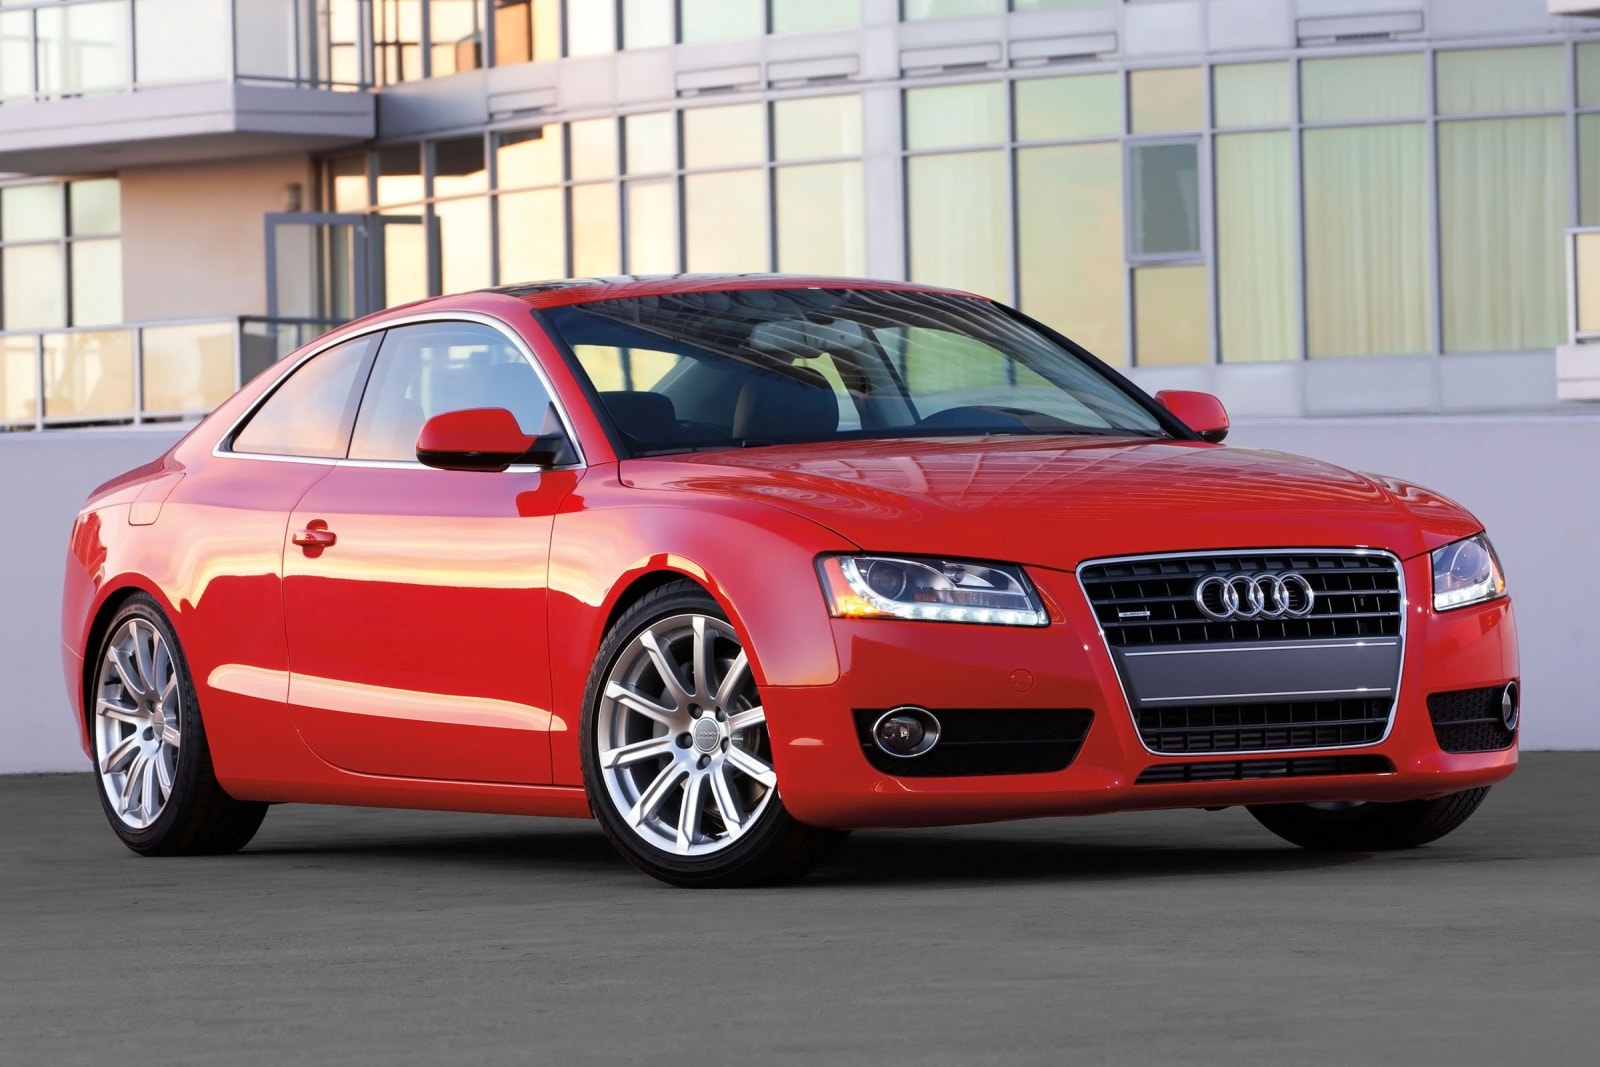 2012 Audi A5 Review & Ratings | Edmunds